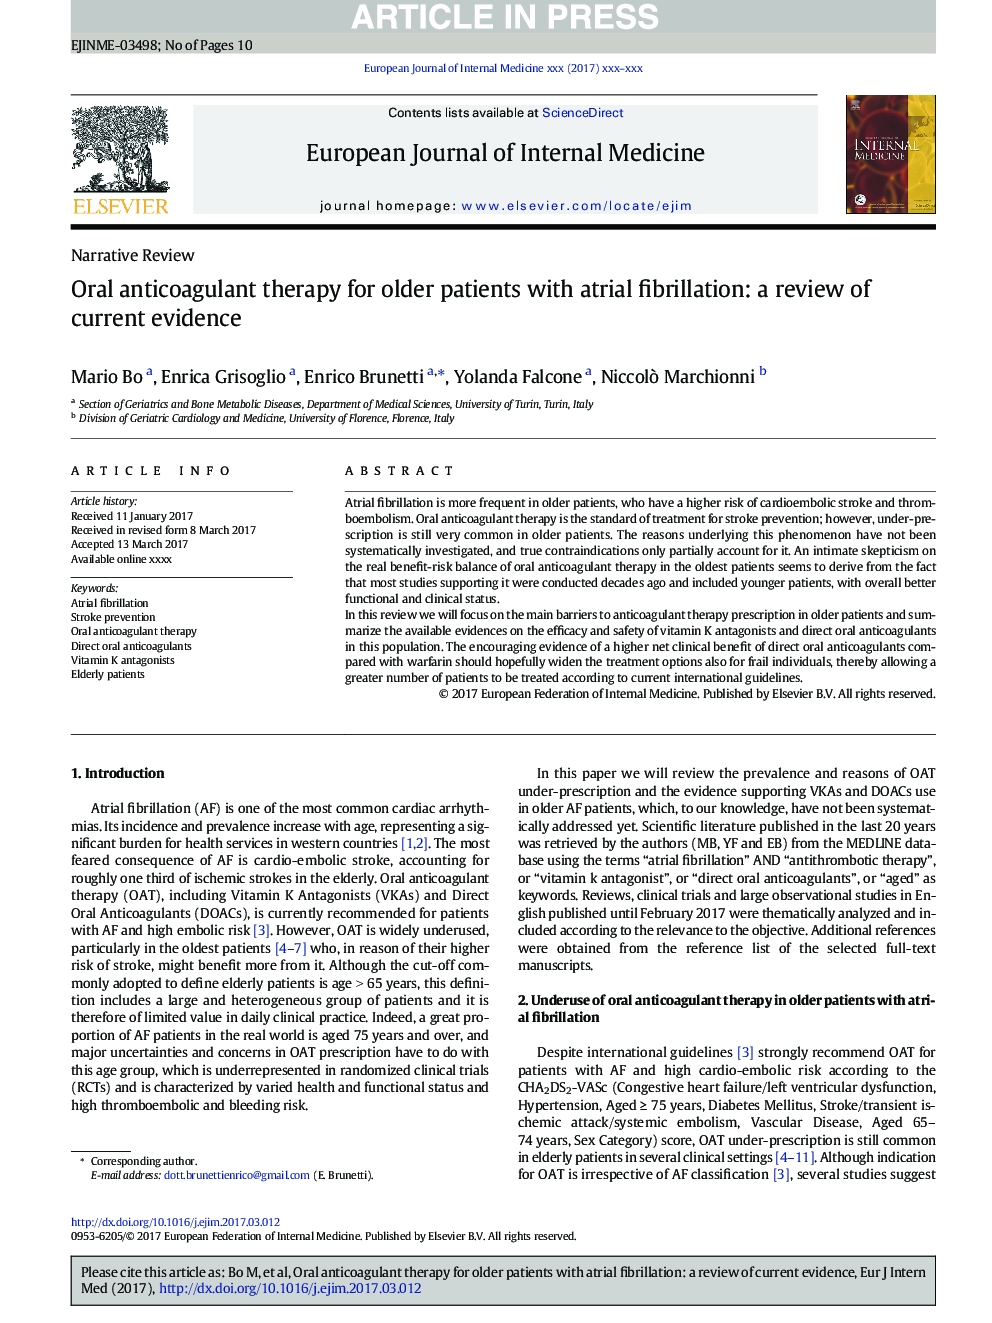 درمان ضد انعقاد خوراکی برای بیماران مسن با فیبریلاسیون دهلیزی: بررسی شواهد موجود 